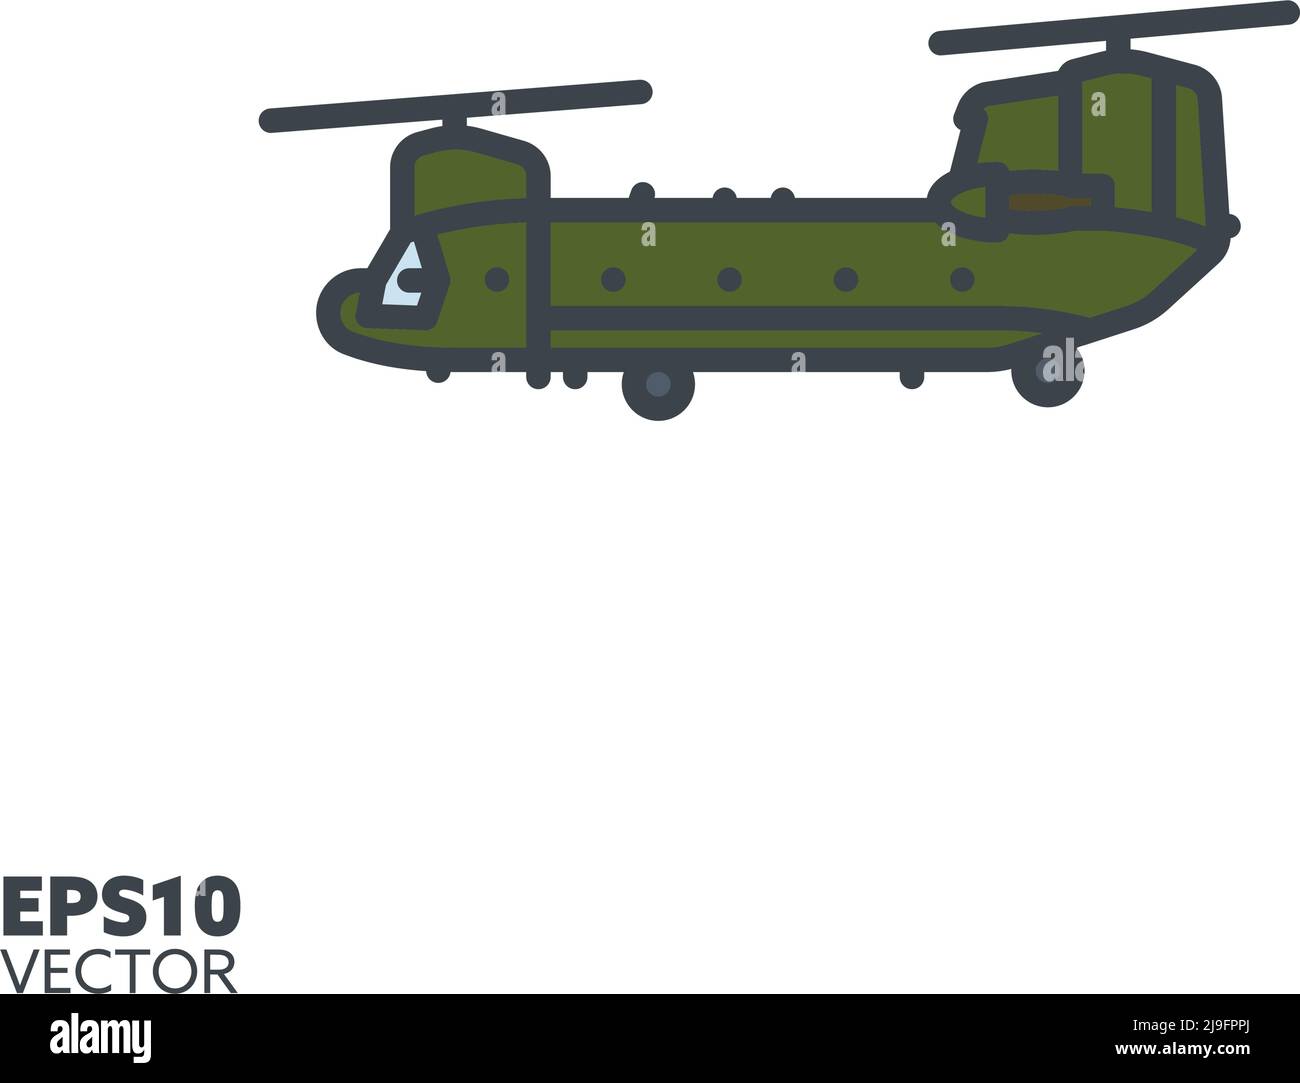 Militär Transport Hubschrauber Vektor gefüllt Linie Symbol. Air Force Heli-Farbsymbol. Stock Vektor